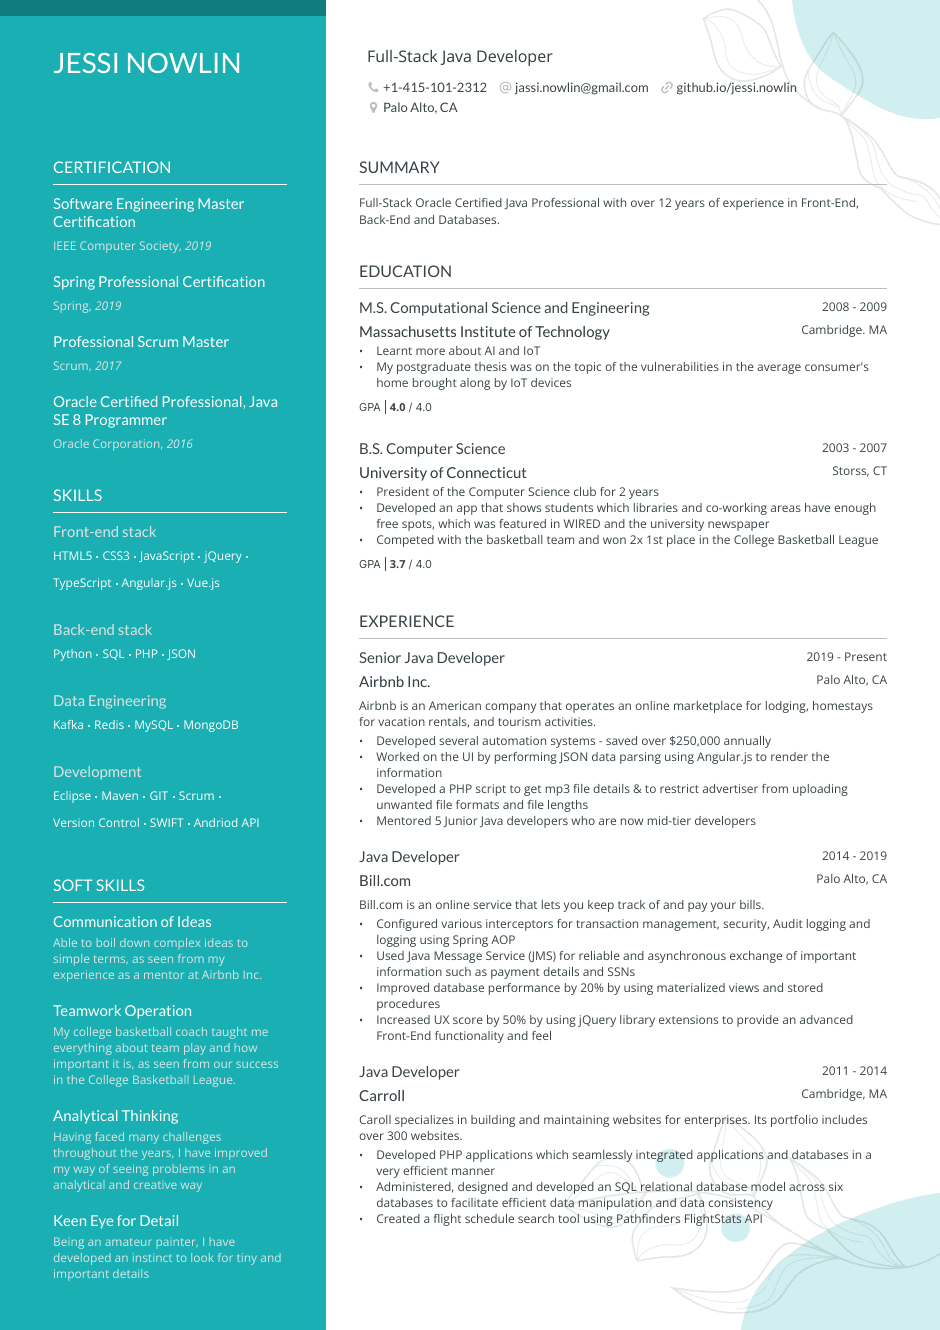 Full stack java developer resume example